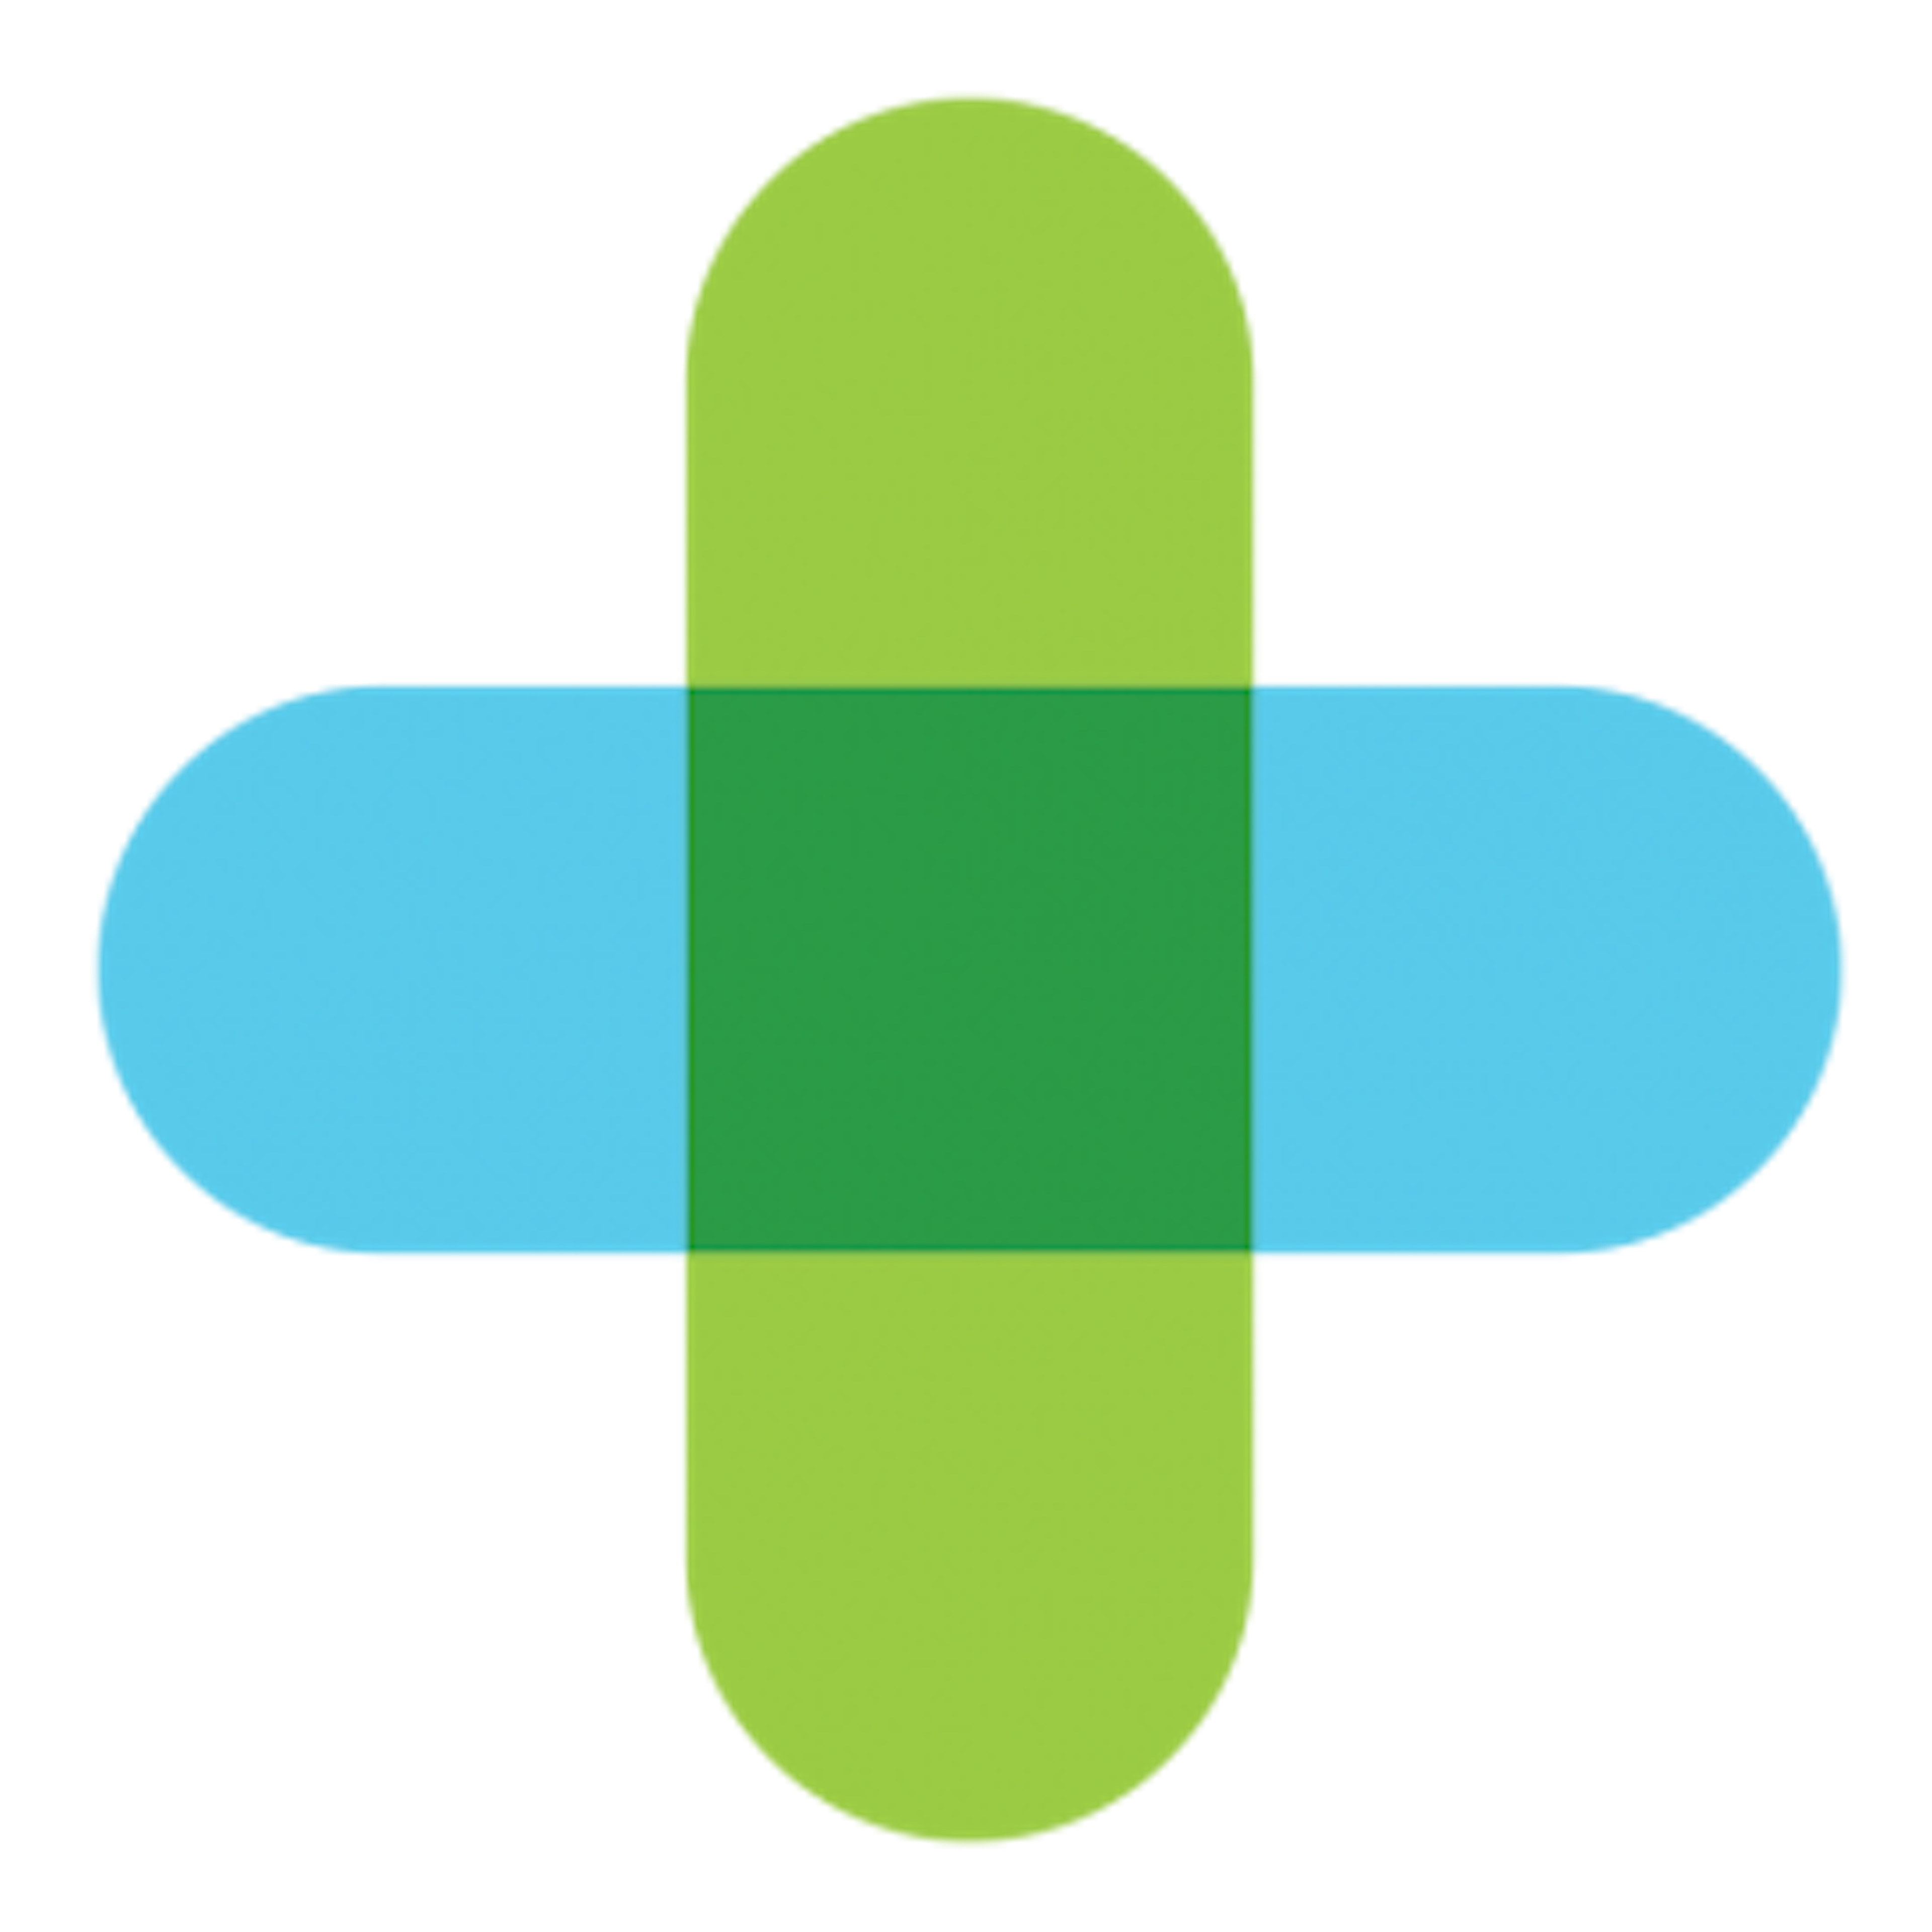 PracticeSuite Logo